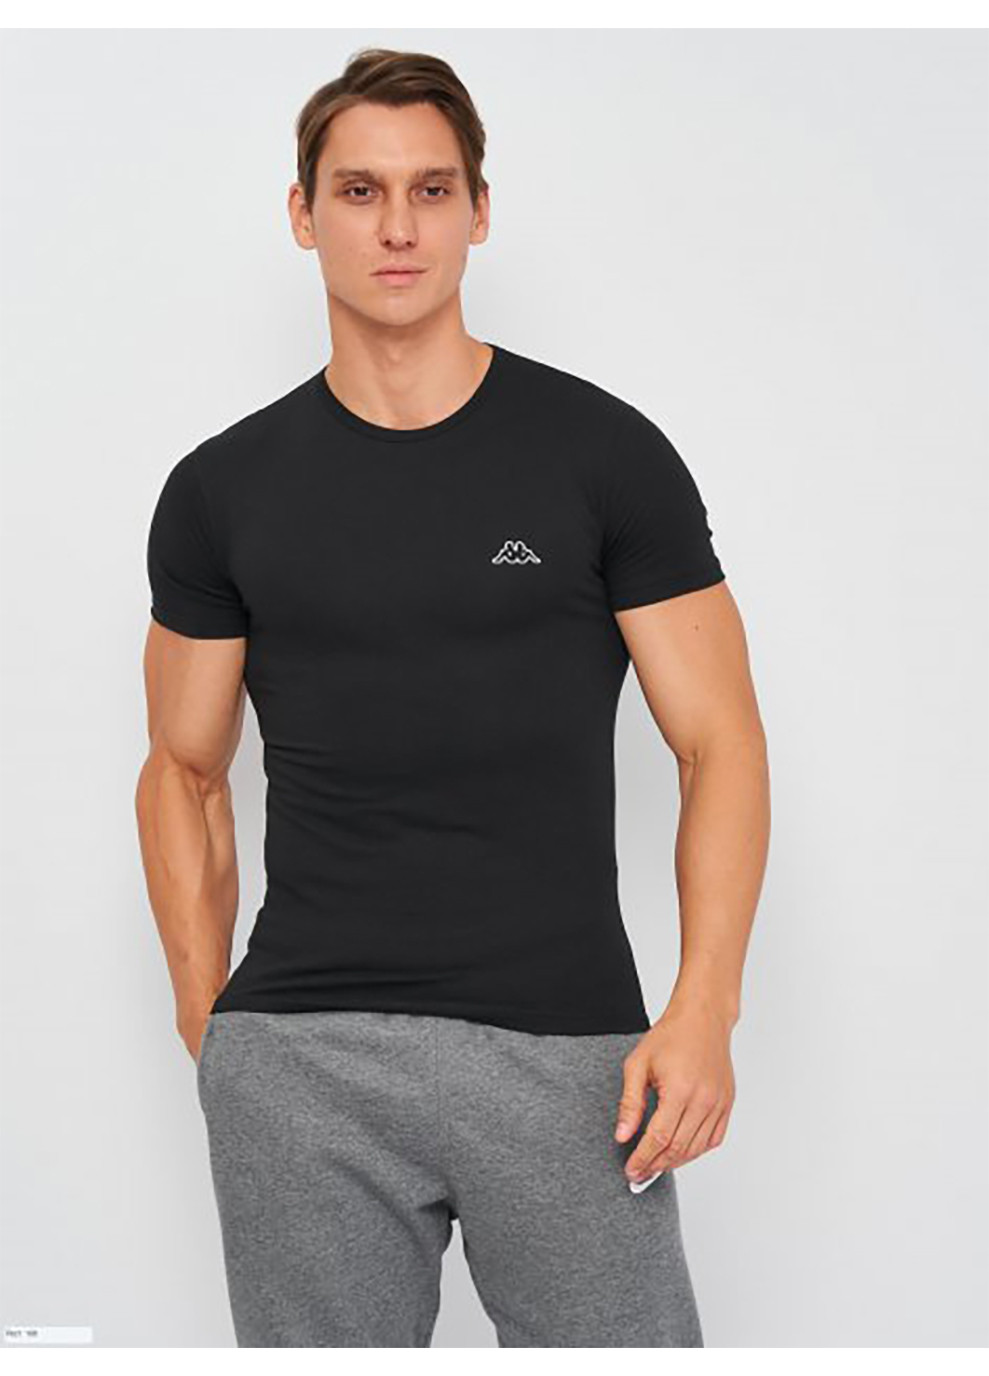 Чорна футболка t-shirt mezza manica girocollo чорний 2xlчоловік k1305 nero-2xl Kappa